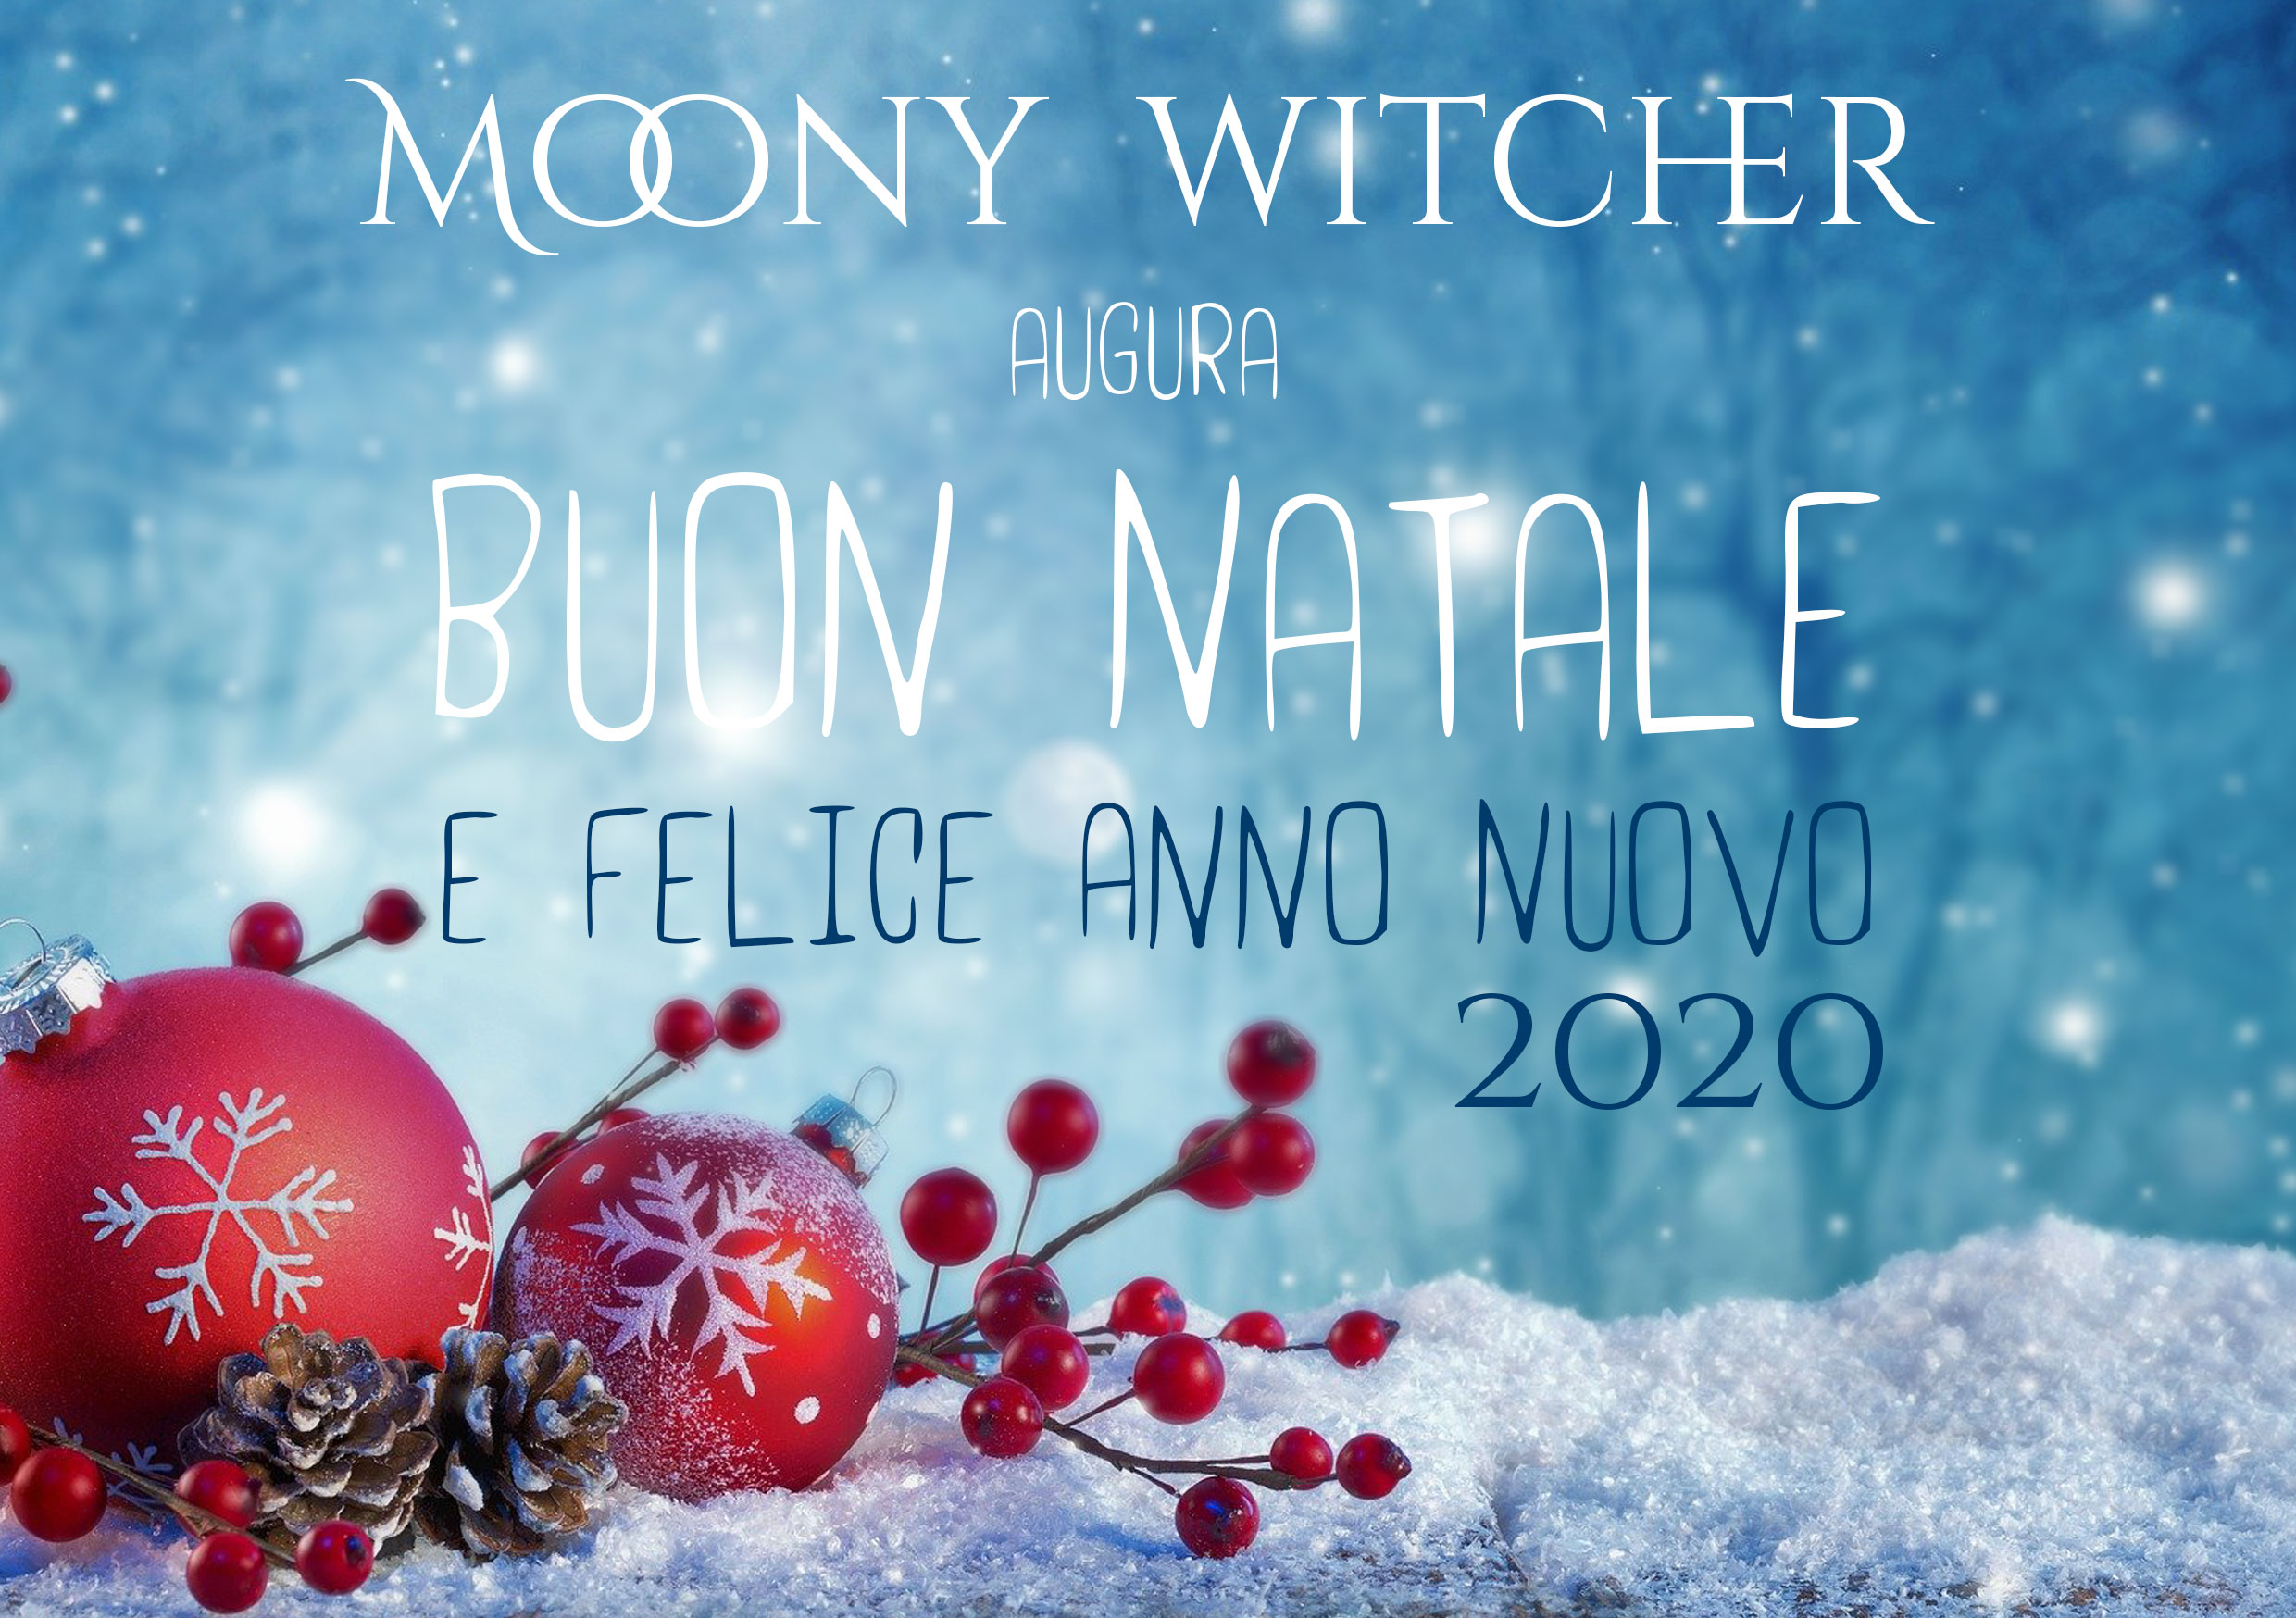 Immagini Natale E Buon Anno.Buon Natale E Felice Anno Nuovo 2020 Moony Witcher Il Blog